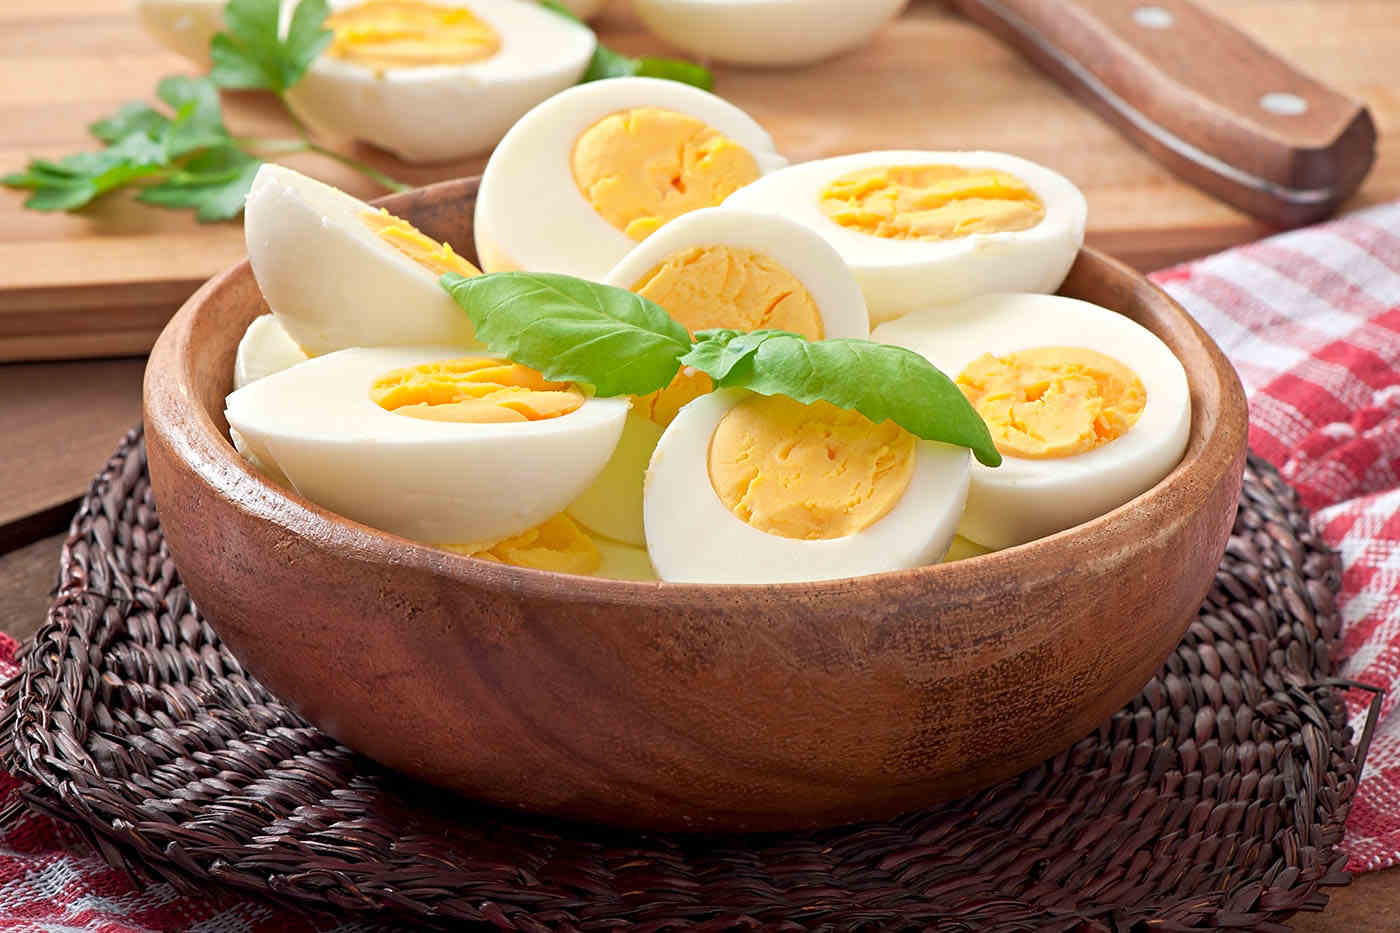 dieta cu oua 7 zile chris pierderea în greutate